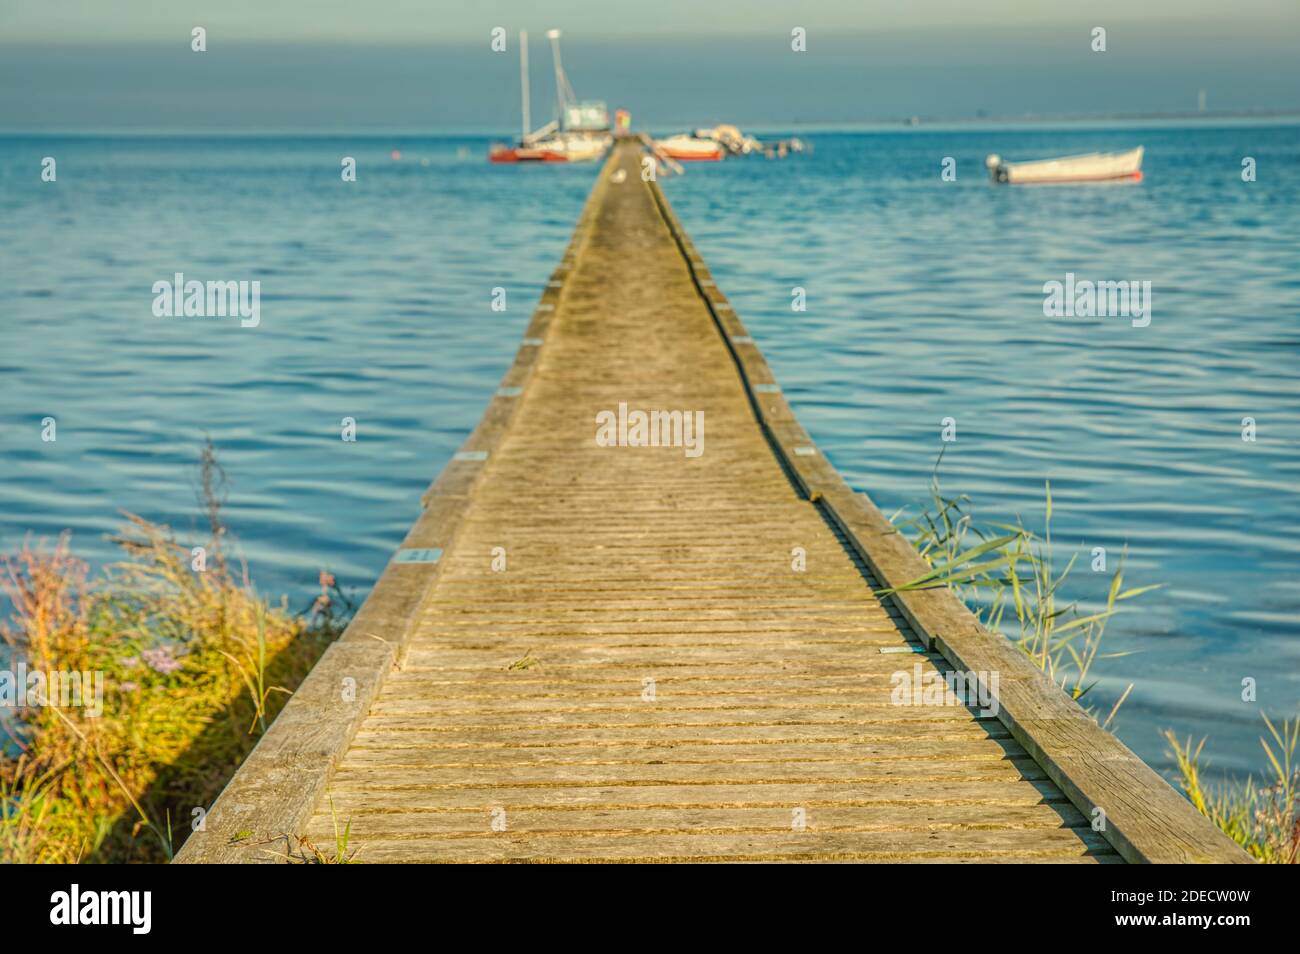 Molo di legno o molo sul Mar Baltico con ormeggio barche fornisce un'illustrazione per le vacanze estive. La passeggiata sul lungomare o la banchina trasmettono il concetto di scopo Foto Stock